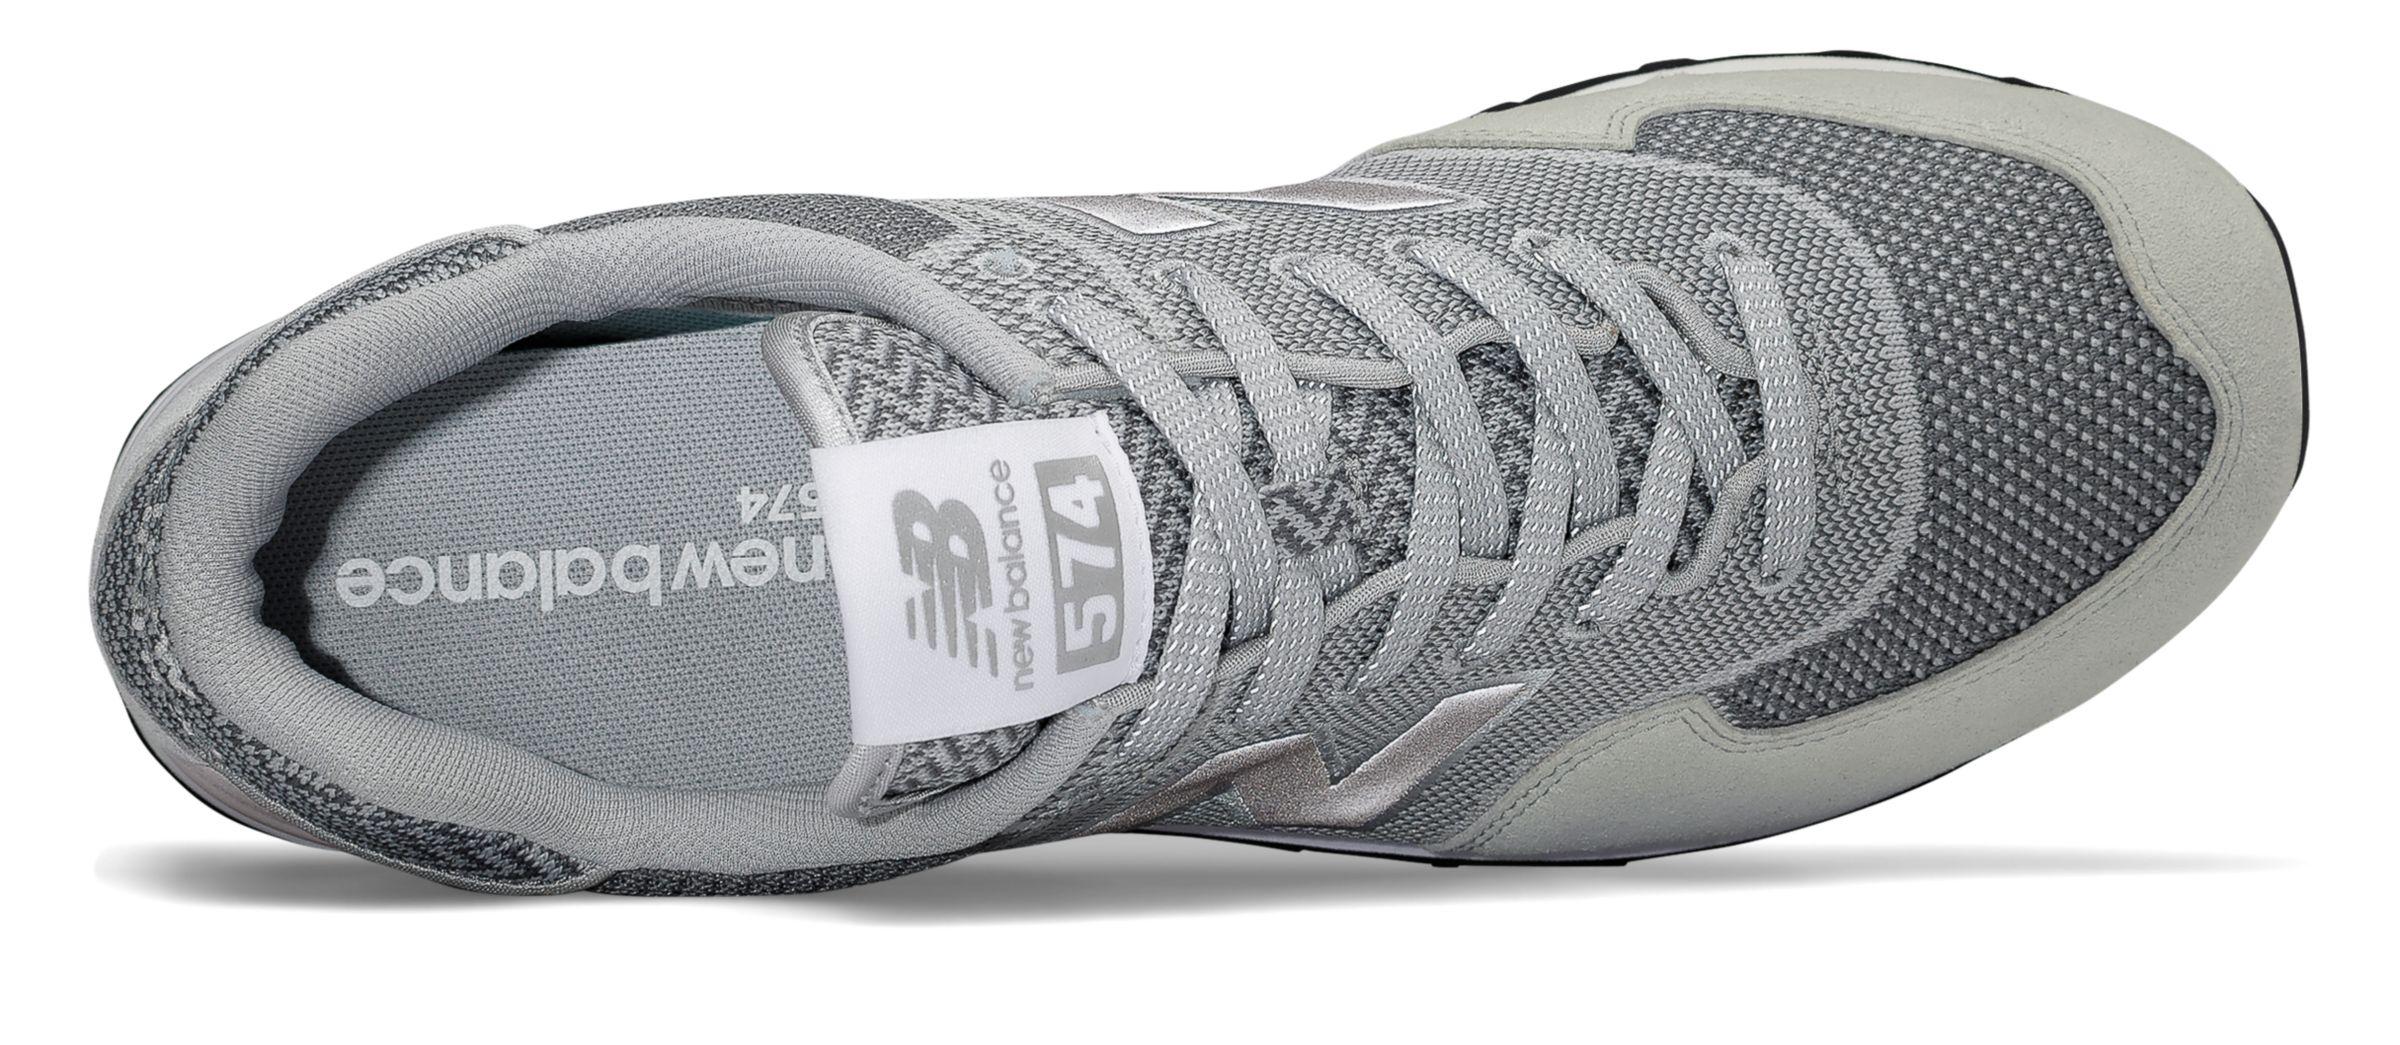 new balance 574 engineered mesh sneaker